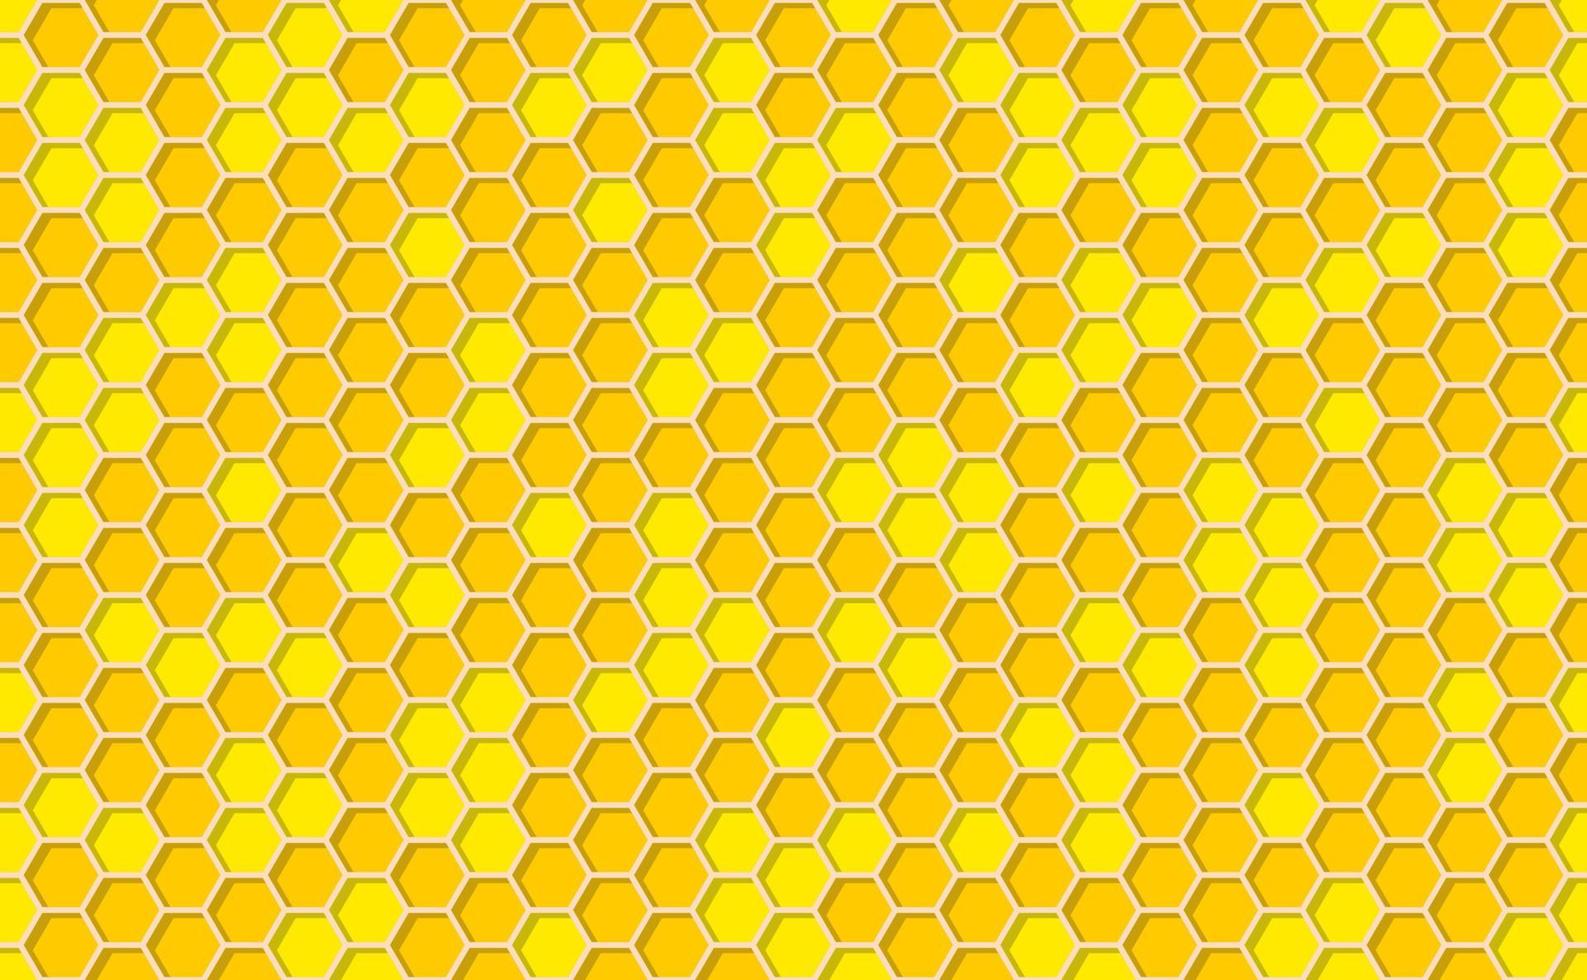 Favo sfondo. alveare senza soluzione di continuità modello. vettore illustrazione di piatto geometrico struttura simbolo. esagono, esagonale raster, cartello o mosaico cellula icona. miele ape alveare, d'oro arancia giallo.